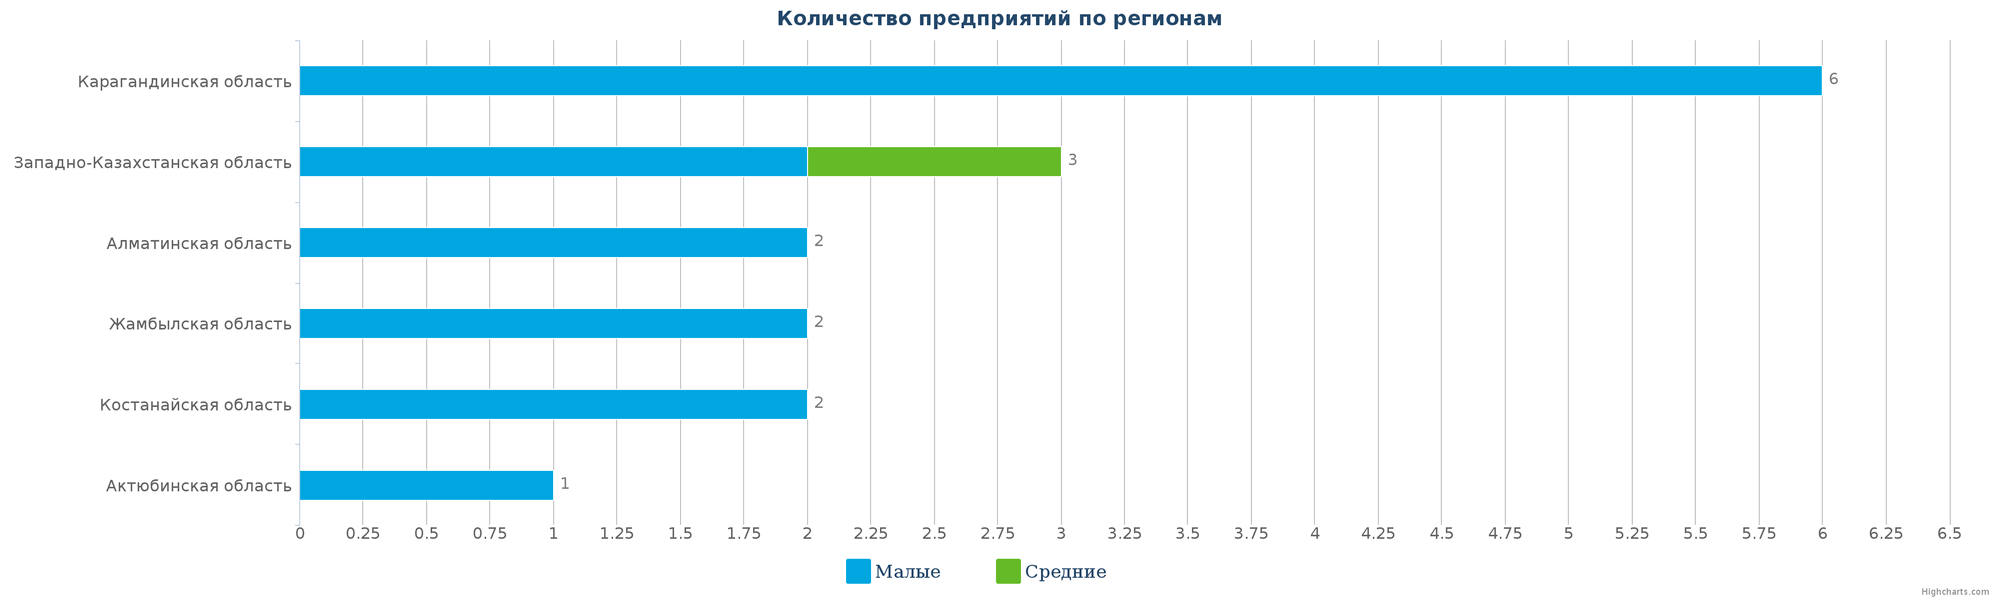 Количество новых производственных компаний по регионам Казахстана